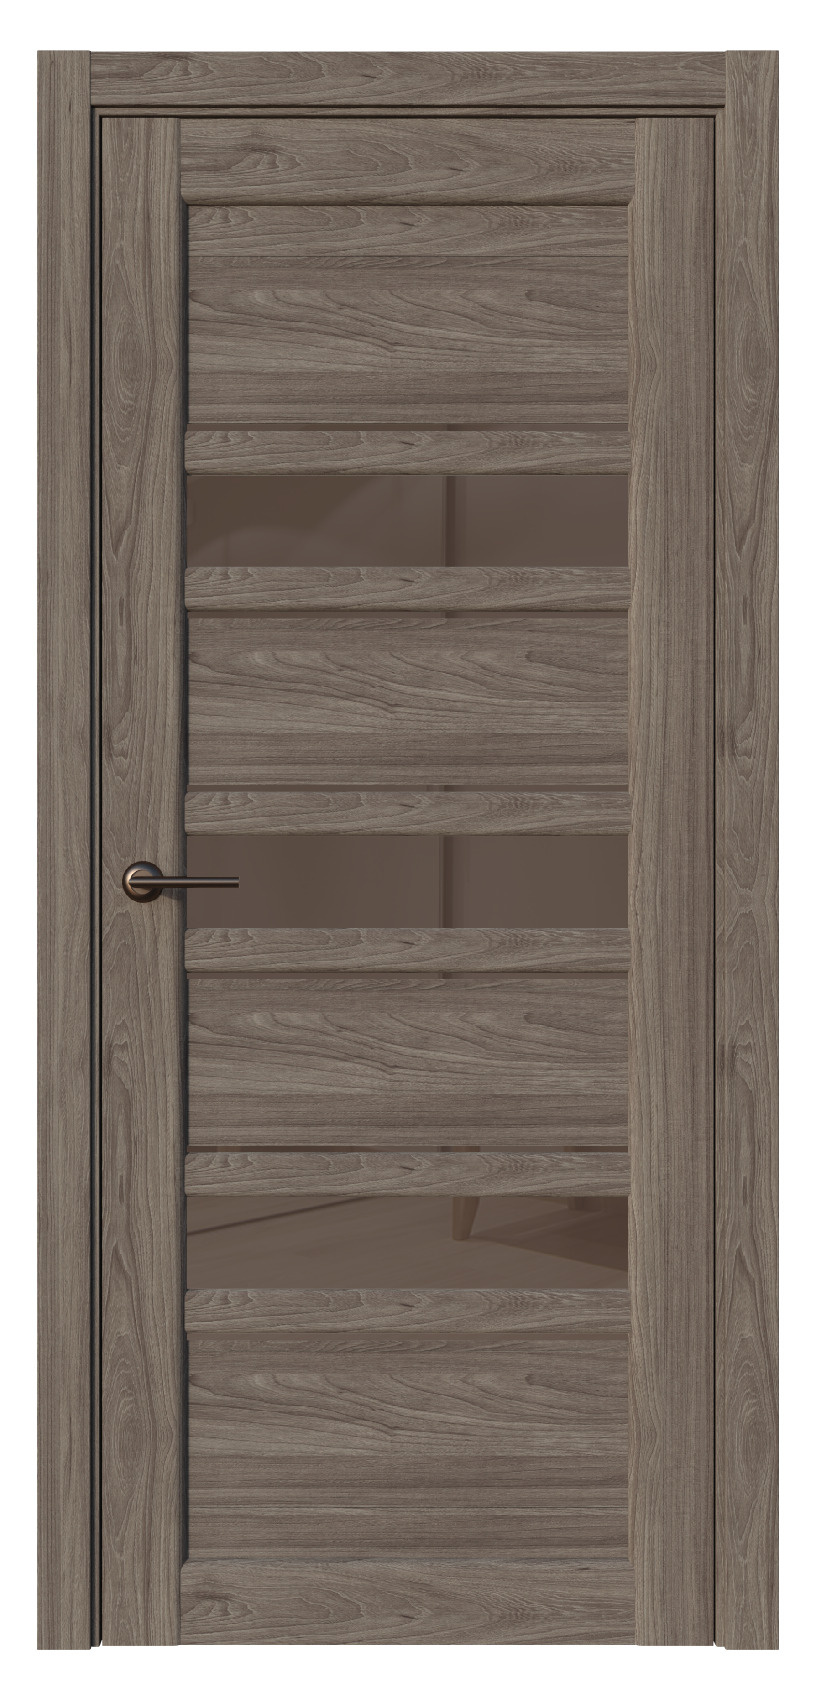 Questdoors Межкомнатная дверь QX3, арт. 17580 - фото №1